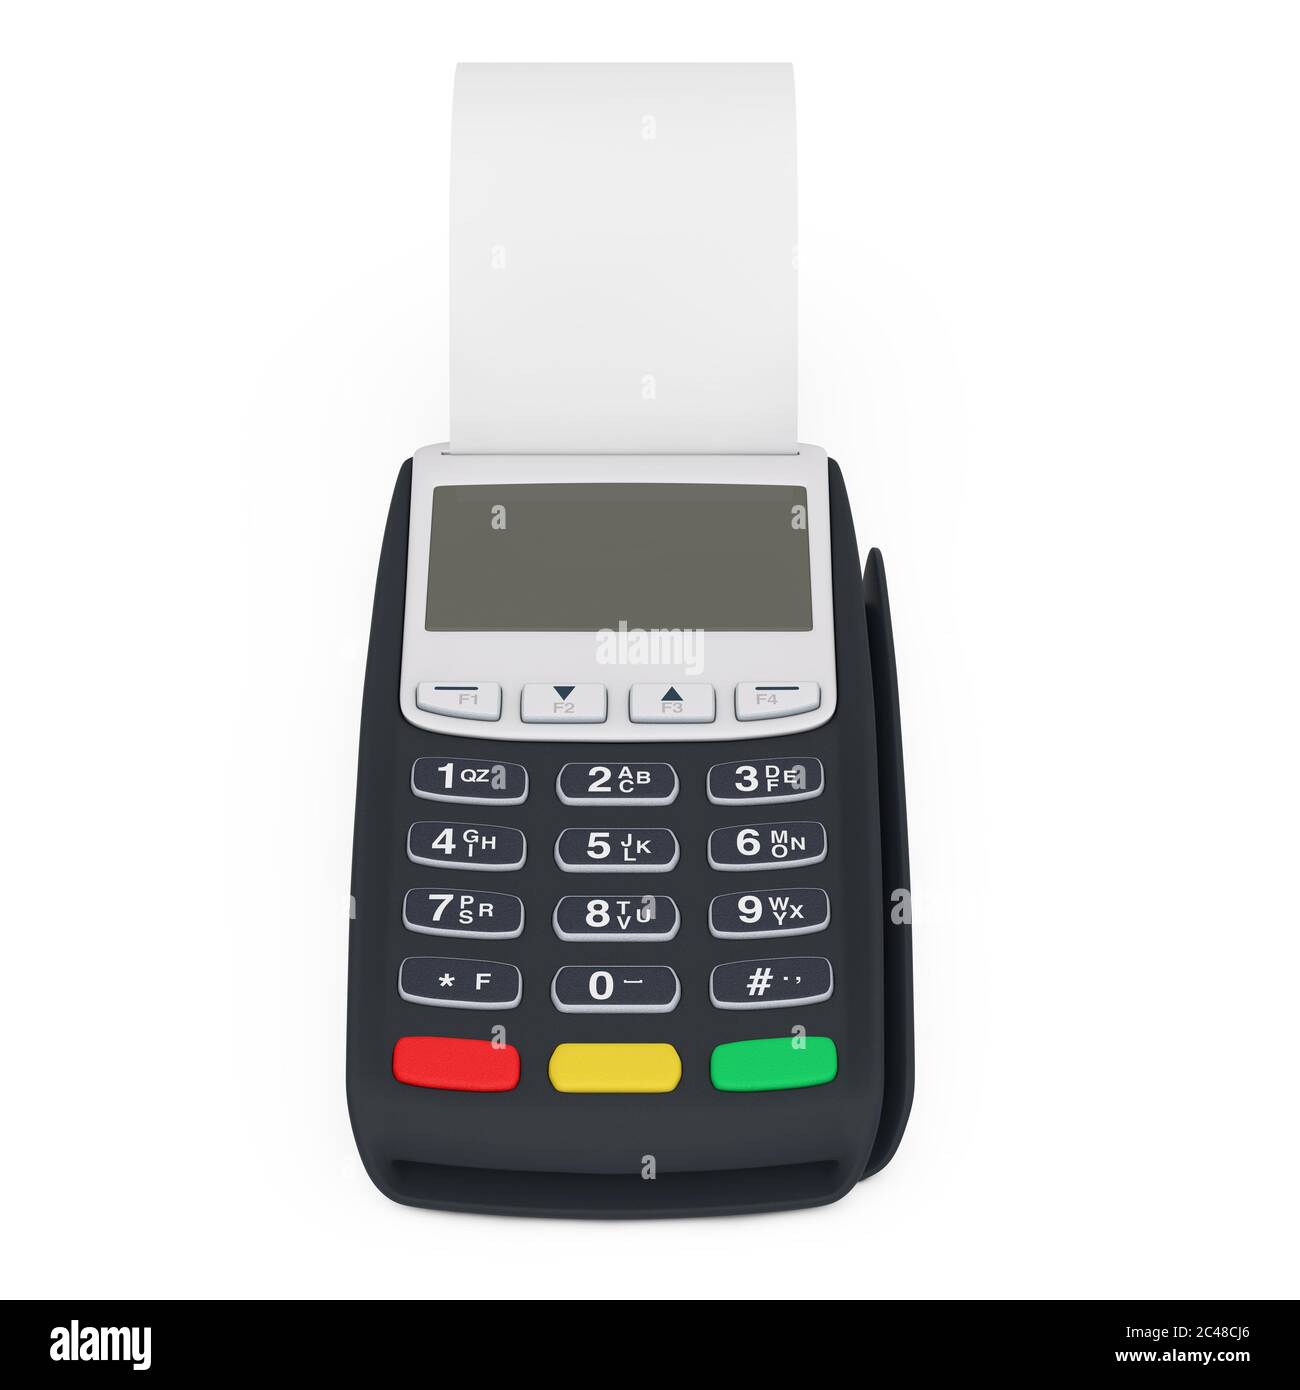 Guichet automatique de caisse du terminal de la banque pour le paiement  avec ruban de cach laminé vierge sur fond blanc. Rendu 3d Photo Stock -  Alamy